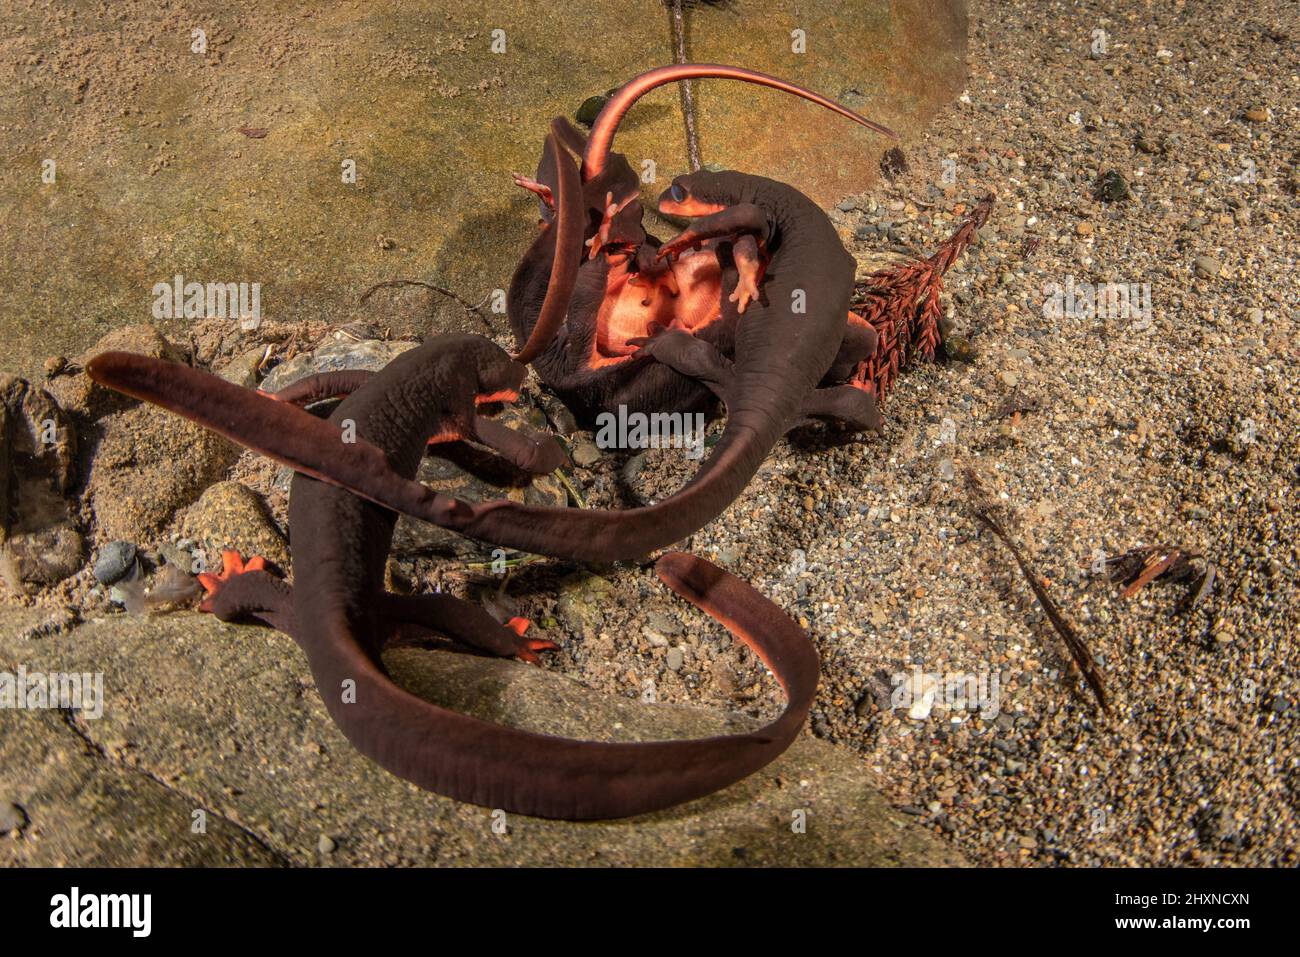 El acoplamiento de los newts rojos del bellied (Taricha rivularis) forma una bola submarina de salamanders donde los hombres luchan sobre hembras. Un anfibio encontrado en California. Foto de stock